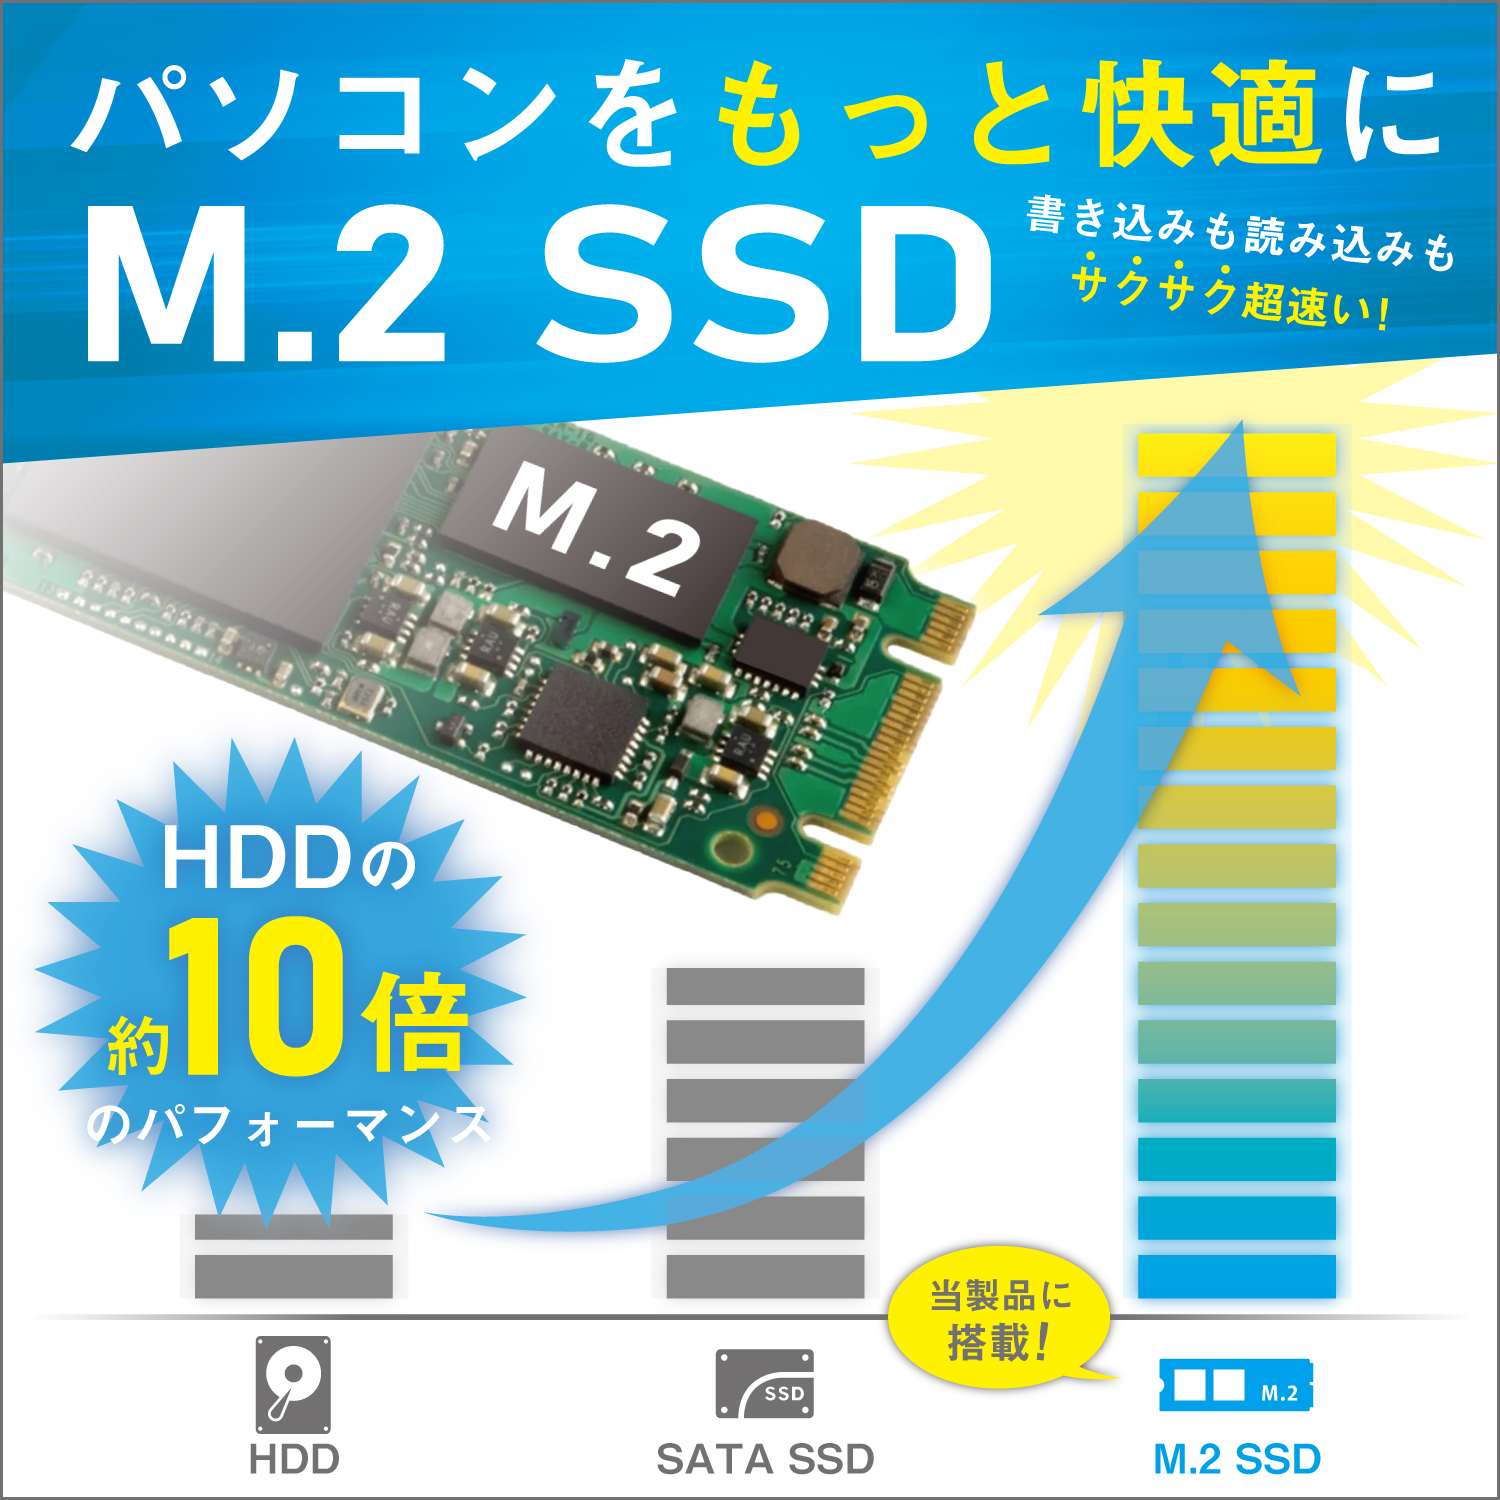 東芝ノートパソコンB452/22FB Office2021 新品SSD128GBSDカード